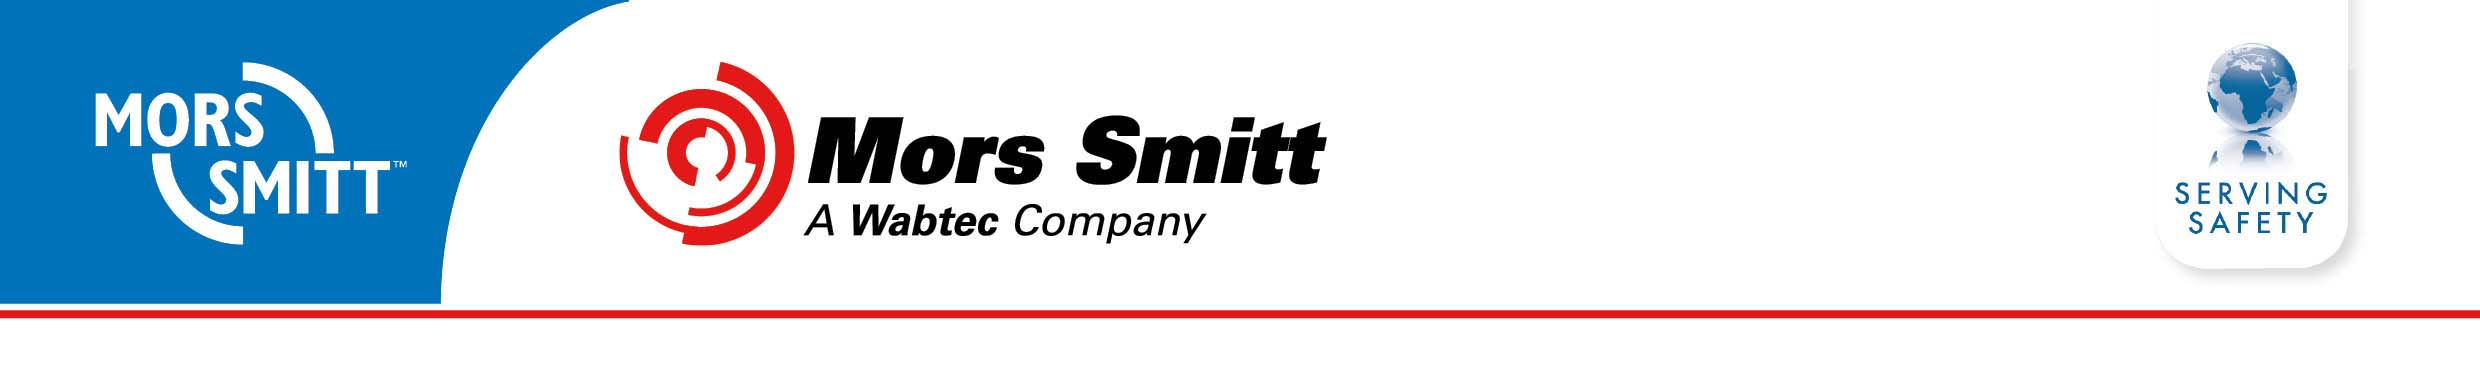 Mors Smitt UK Ltd